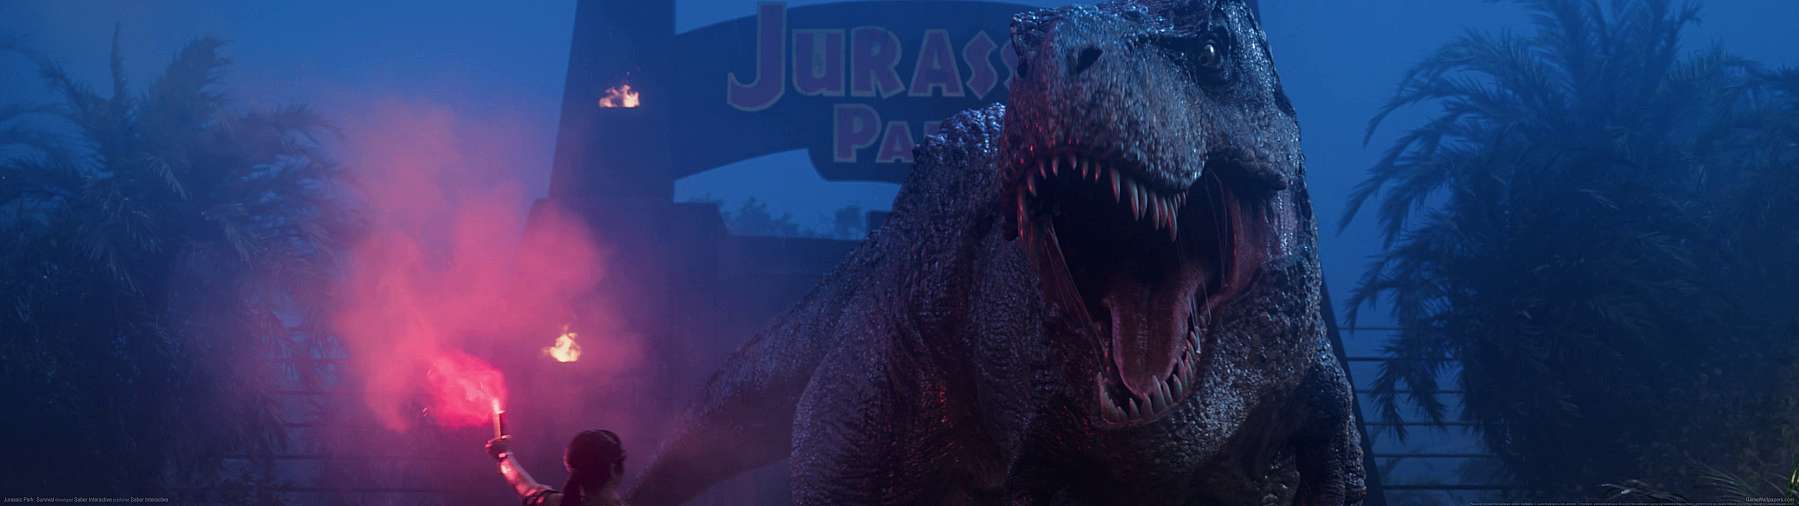 Jurassic Park: Survival superwide achtergrond 01